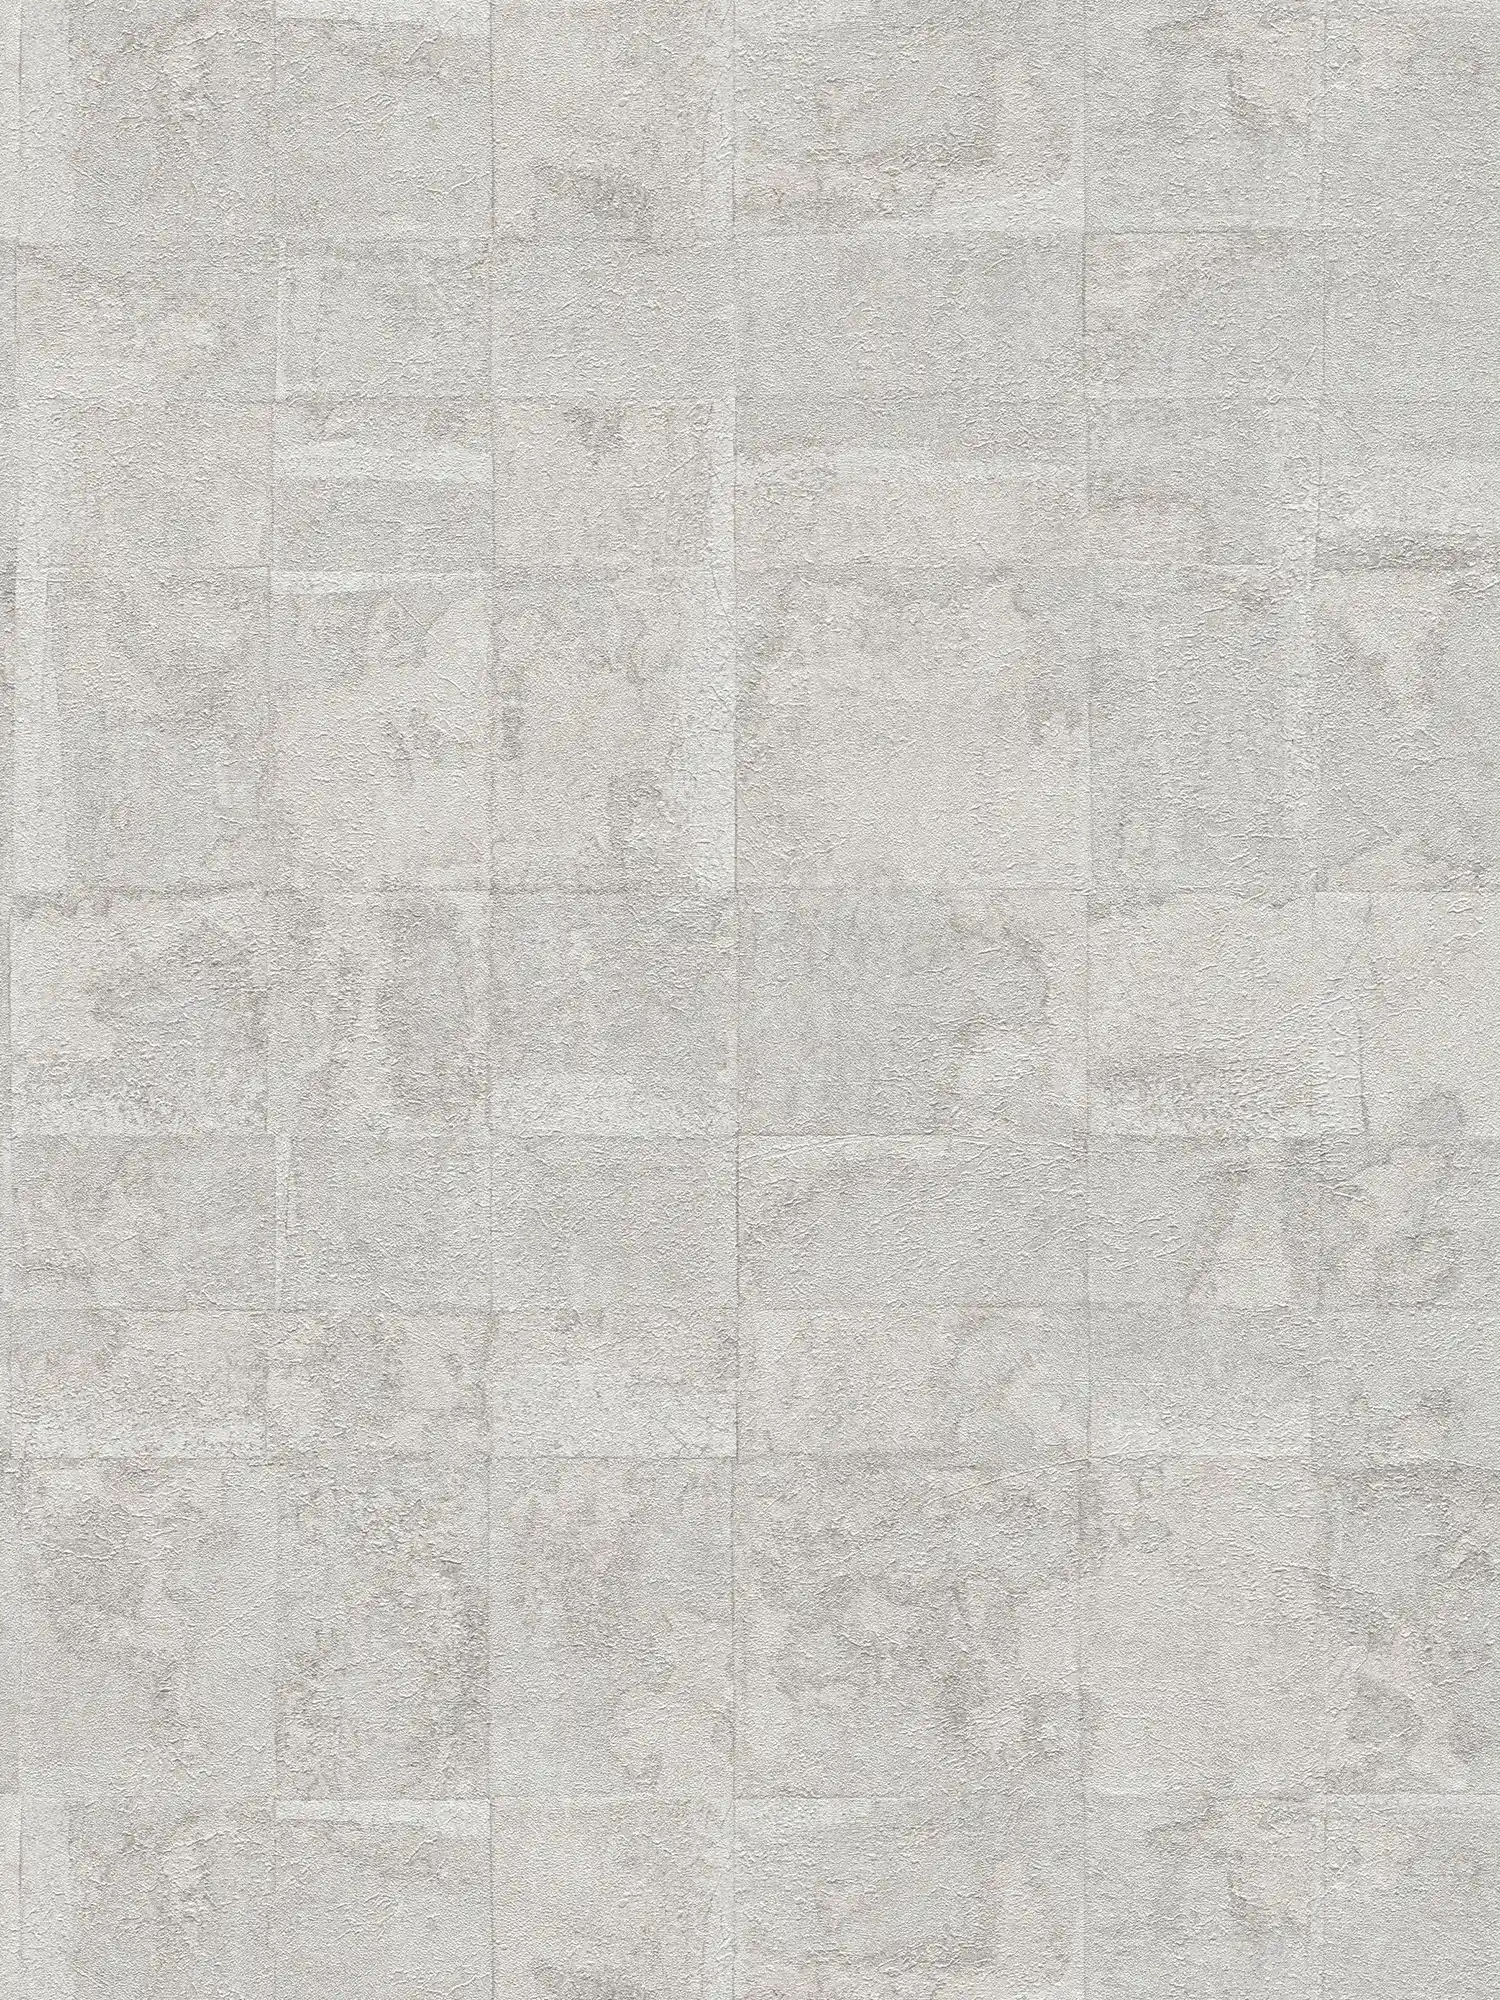 Strukturierte Tapete mit Kacheloptik – Hellgrau, Silber
